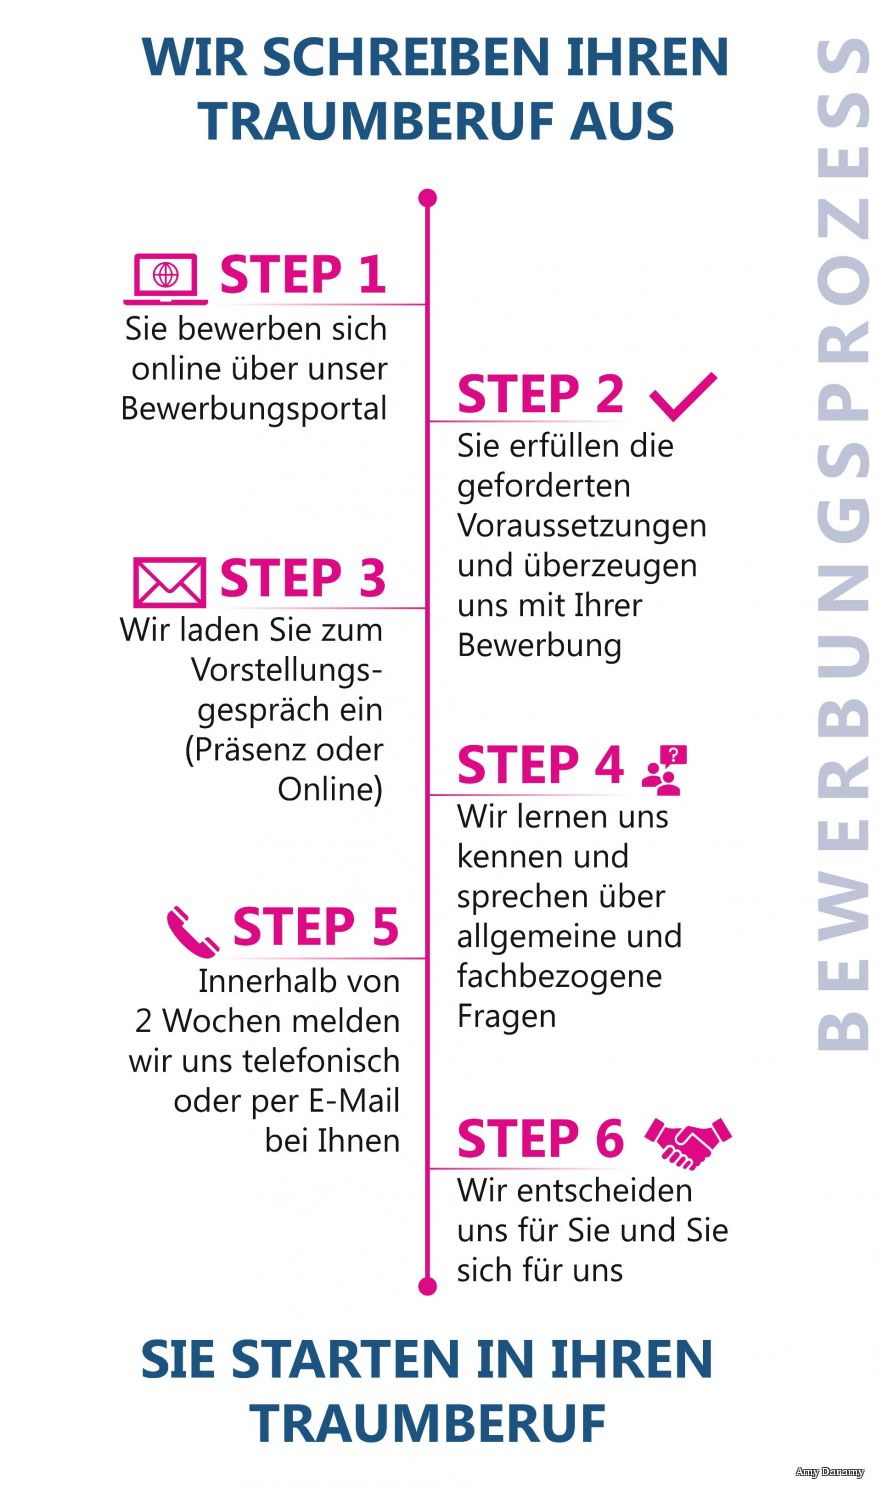 Das Bild zeigt alle Schritte des Bewerbungsprozesses beim Kreis Paderborn. Wir schreiben Ihren Traumberuf aus. Step 1: Sie bewerben sich online über unser Bewerbungsportal. Step 2: Sie erfüllen die geforderten Voraussetzungen und überzeugen uns mit Ihrer Bewerbung. Step 3: Wir laden Sie zum Vorstellungsgespräch ein (Präsenz oder Online). Step 4: Wir lernen uns kennen und sprechen über allgemeine und fachbezogene Fragen. Step 5: Innerhalb von zwei Wochen melden wir uns telefonisch oder per E-Mail bei Ihnen. Step 6: Wir entscheiden uns für Sie und Sie sich für uns. Sie starten in Ihren Traumberuf. 